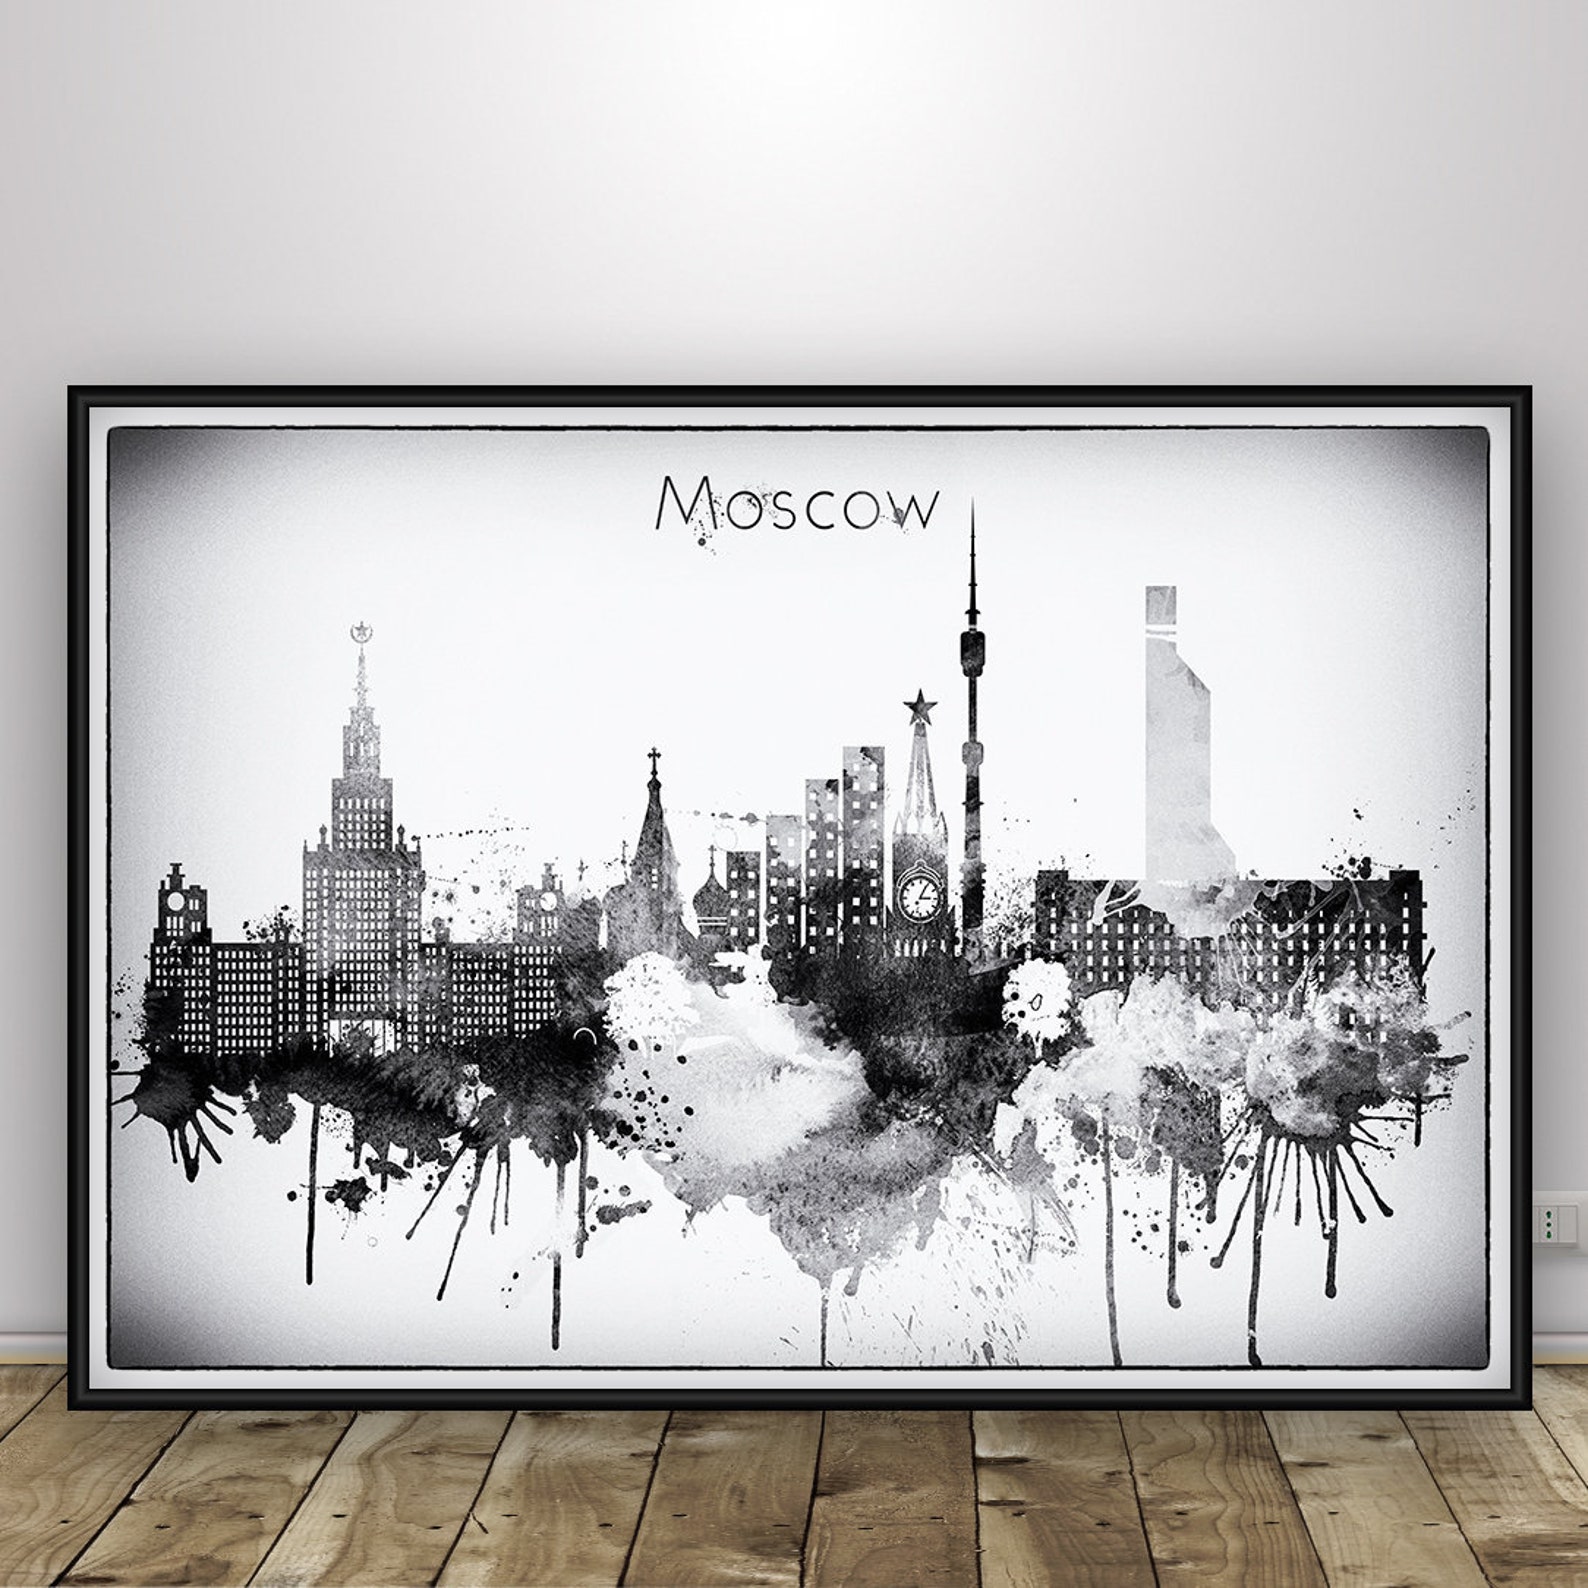 Постеры москвы на стену. Постер Москва. Постер Москва черно-белый. Плакат Москва. Постер на стену вид Москвы.